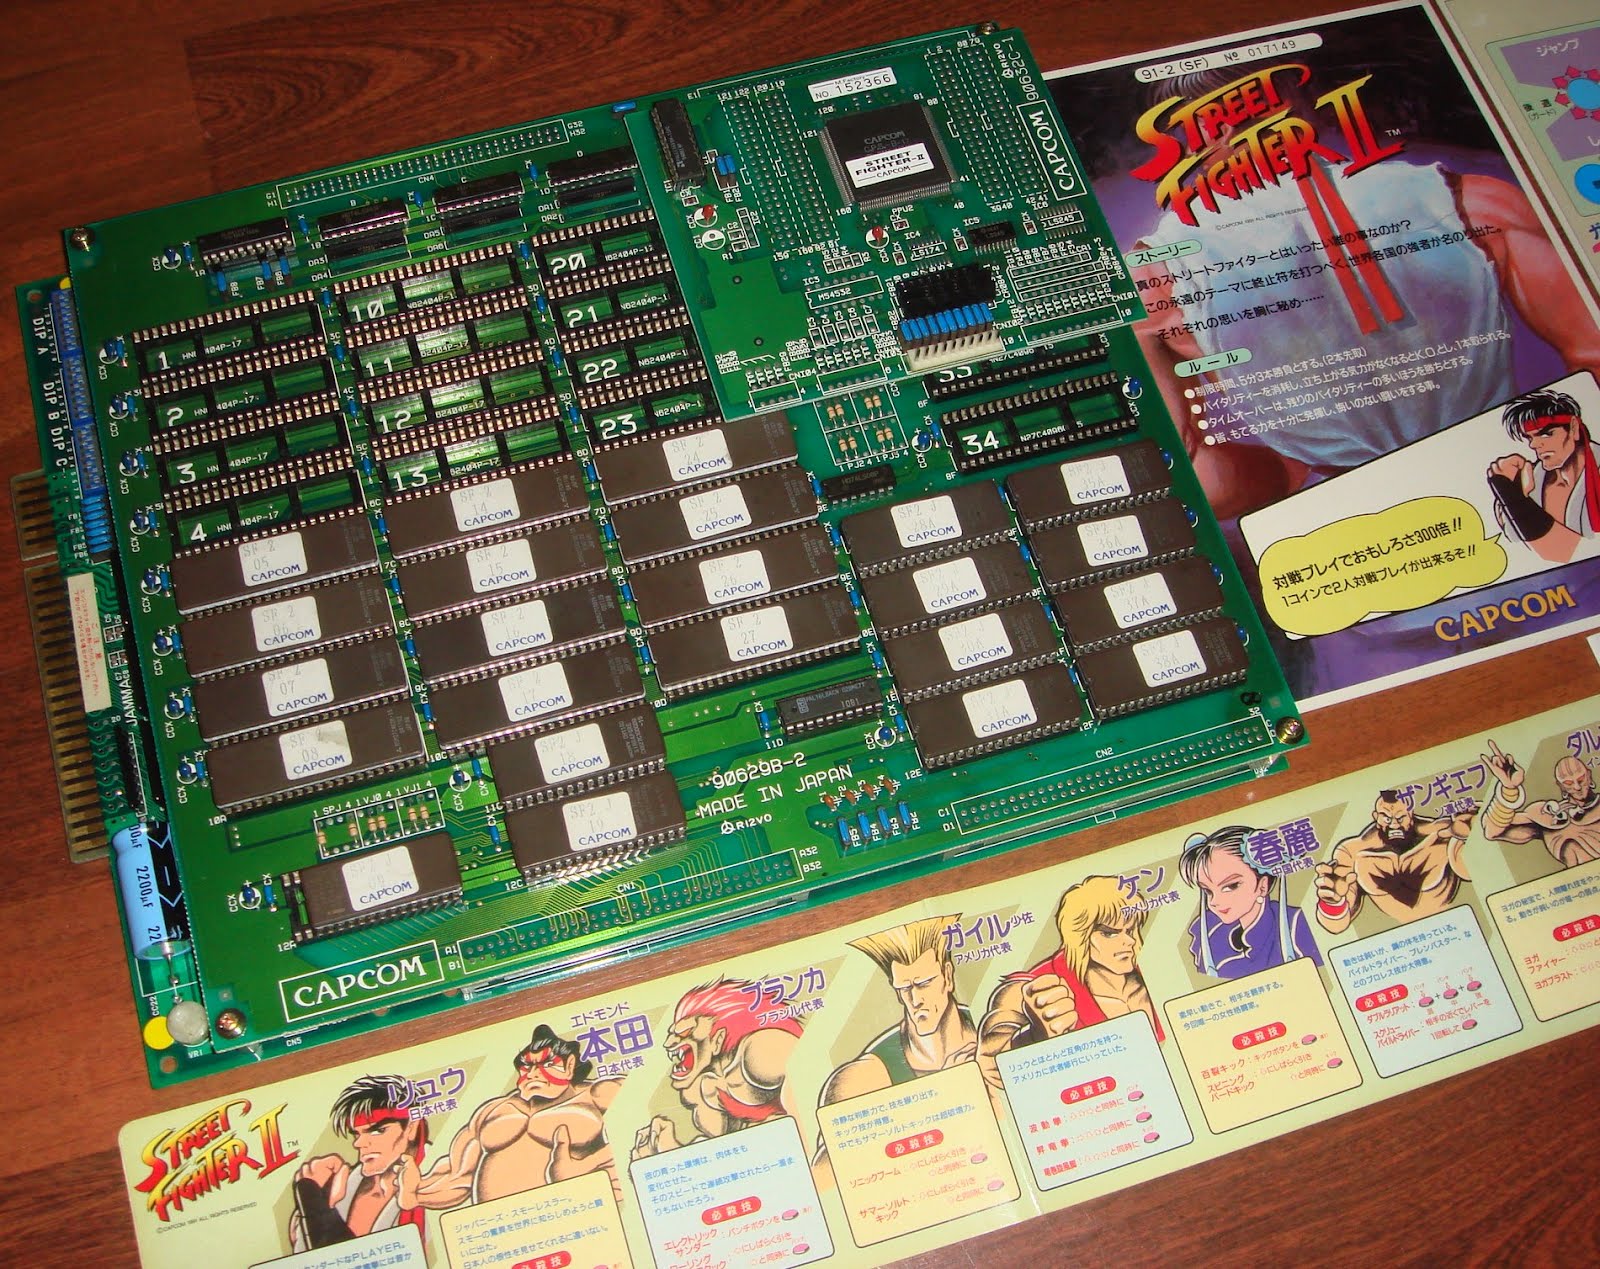 CPS 1  capcom   C board 92641C-1 jamma arcade game pcb 